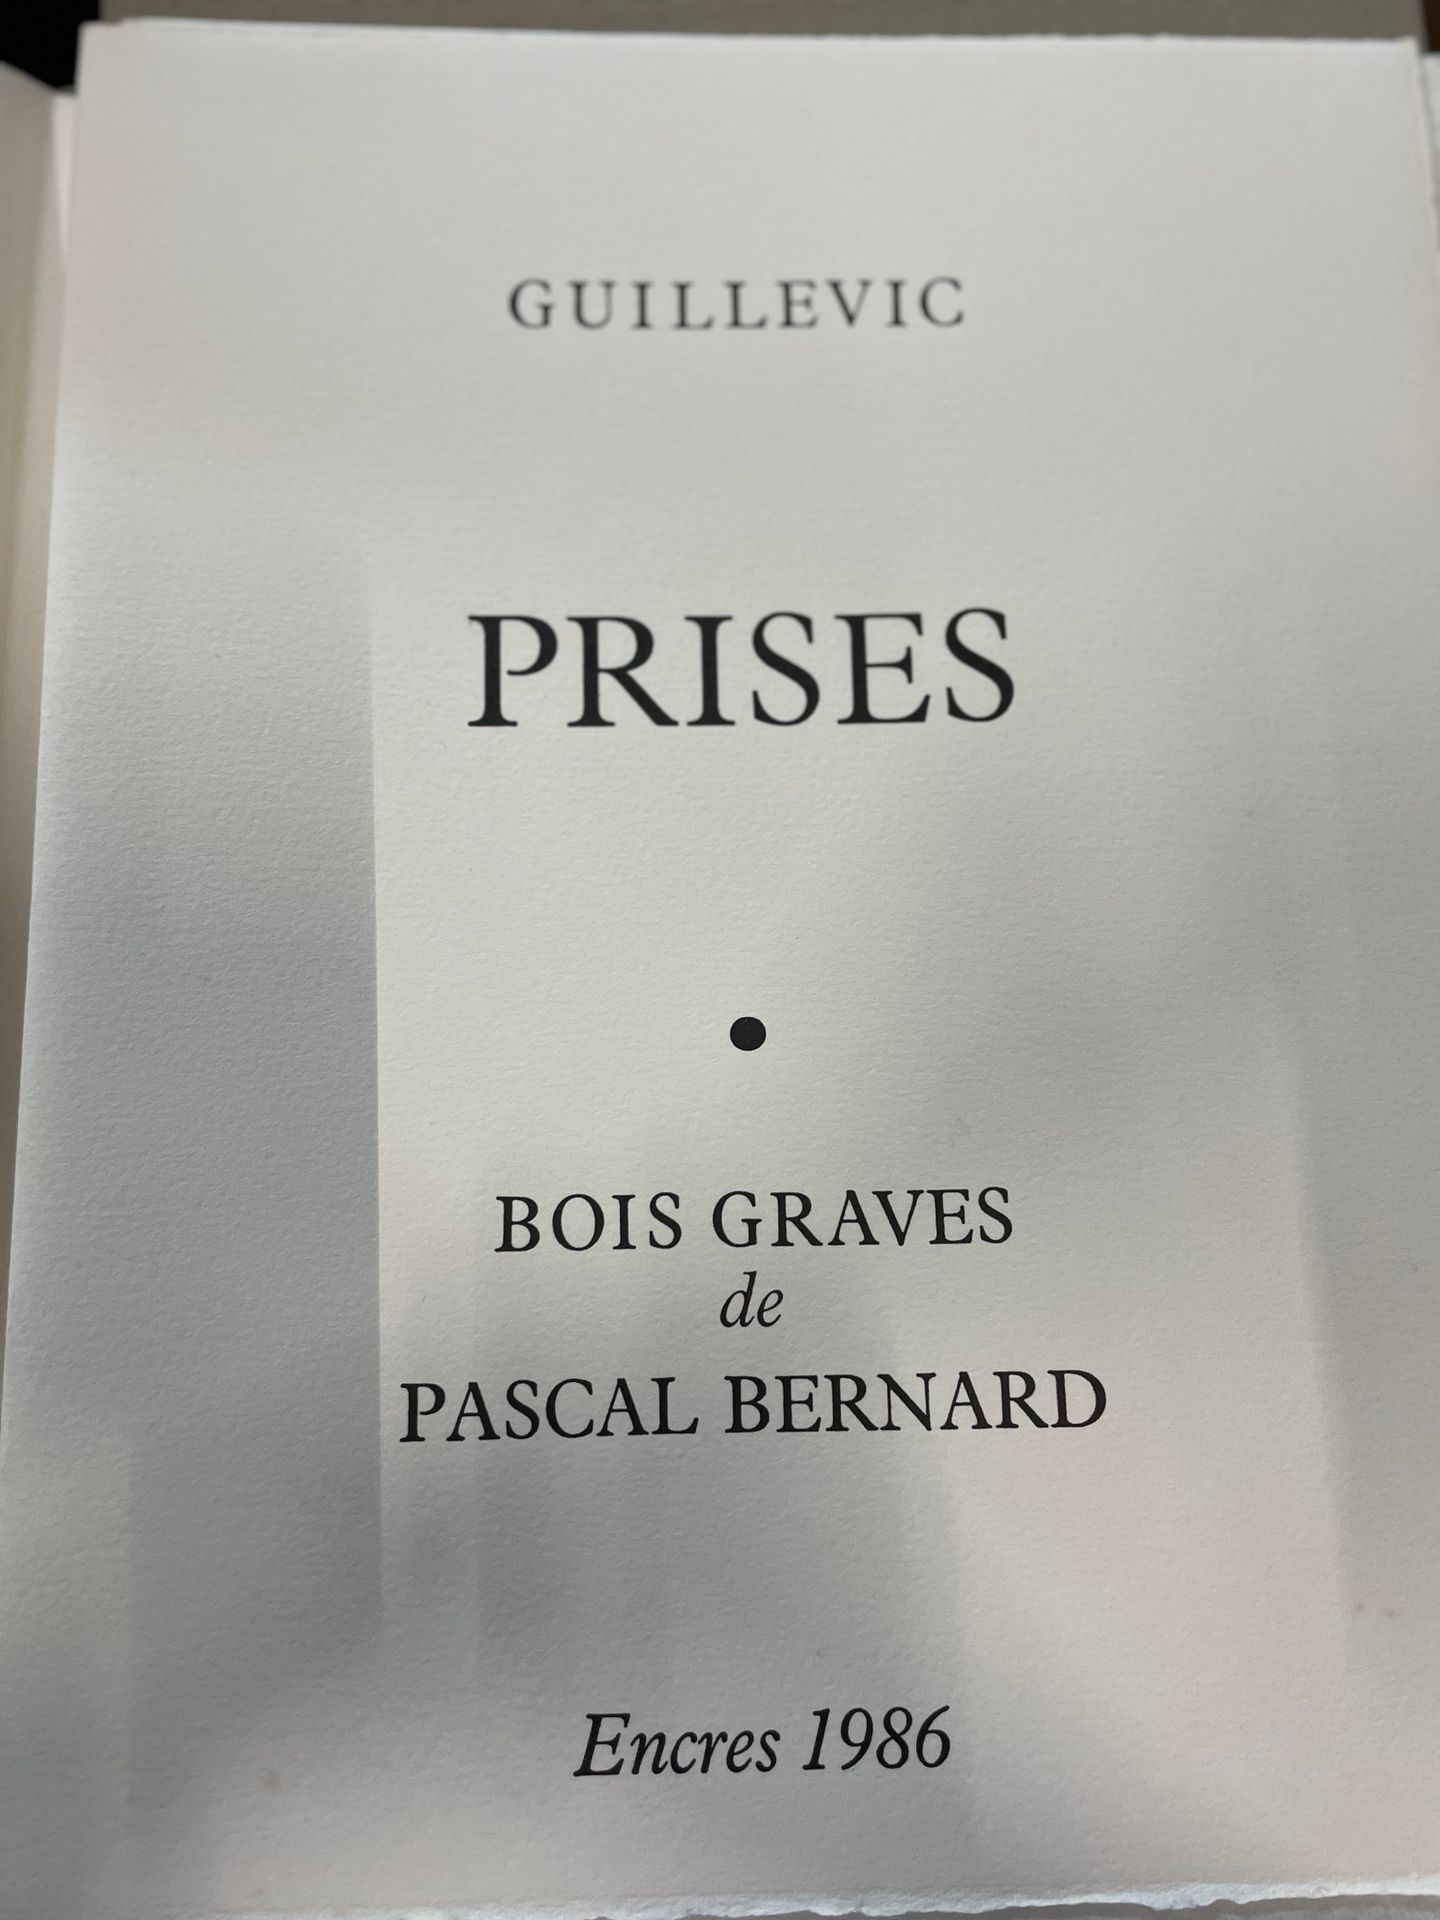 Null 
GUILLEVIC

"Prisen". 

8 Holzstiche von Pascal BERNARD

Tinte, 1986

eines&hellip;